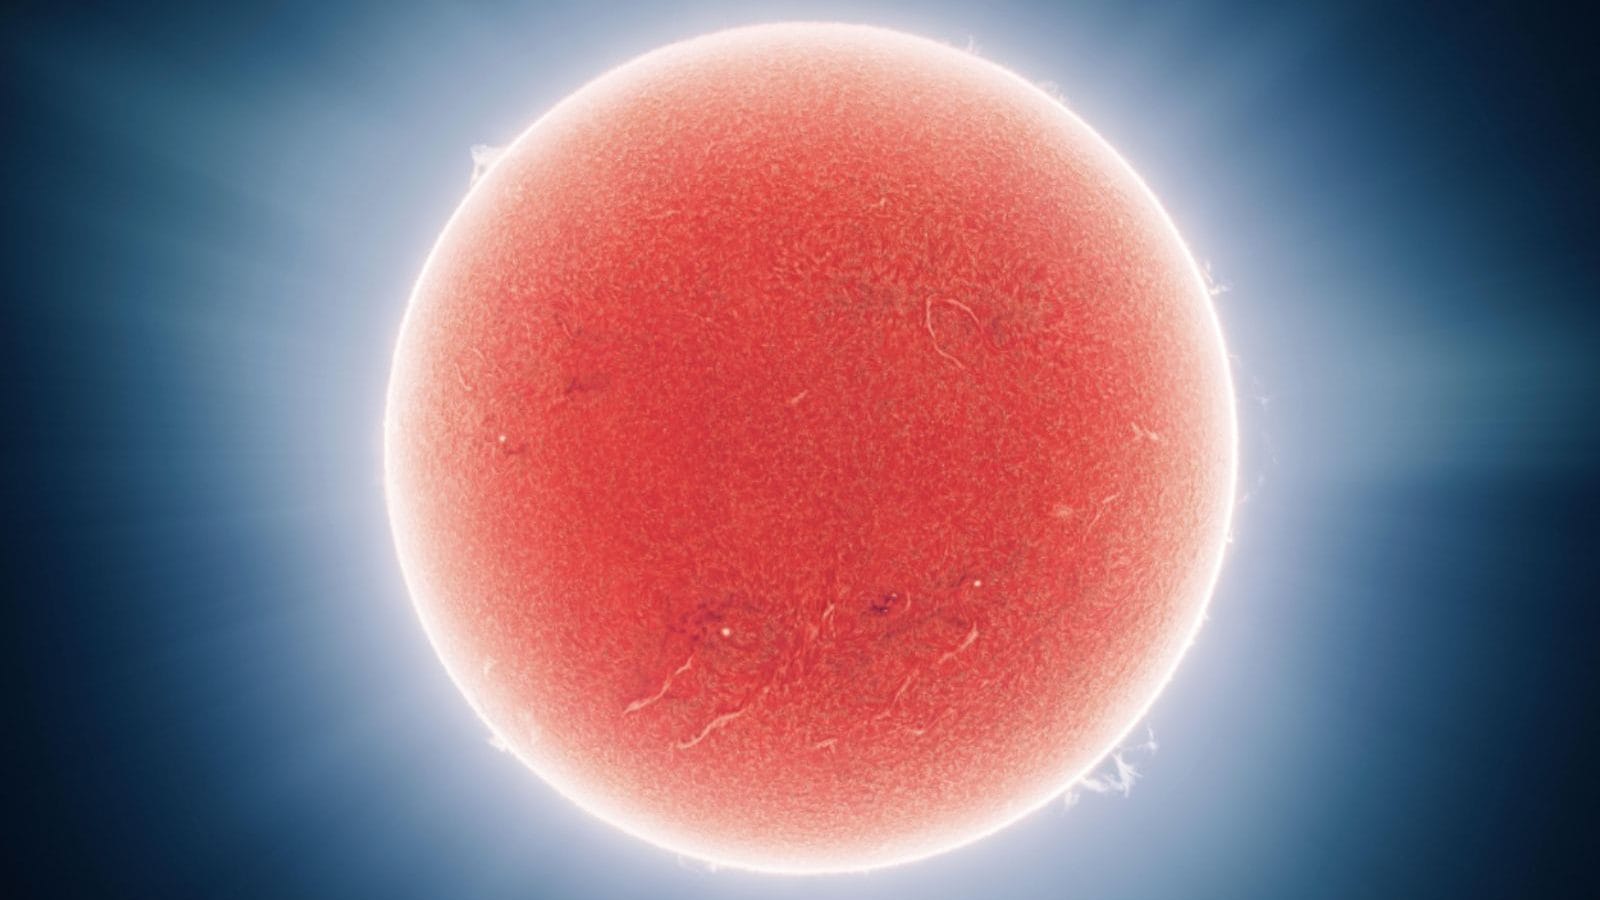 Reddit balls. Солнце через телескоп. Плазма. Эндрю Маккарти фото солнца. Луна в телескоп фото.